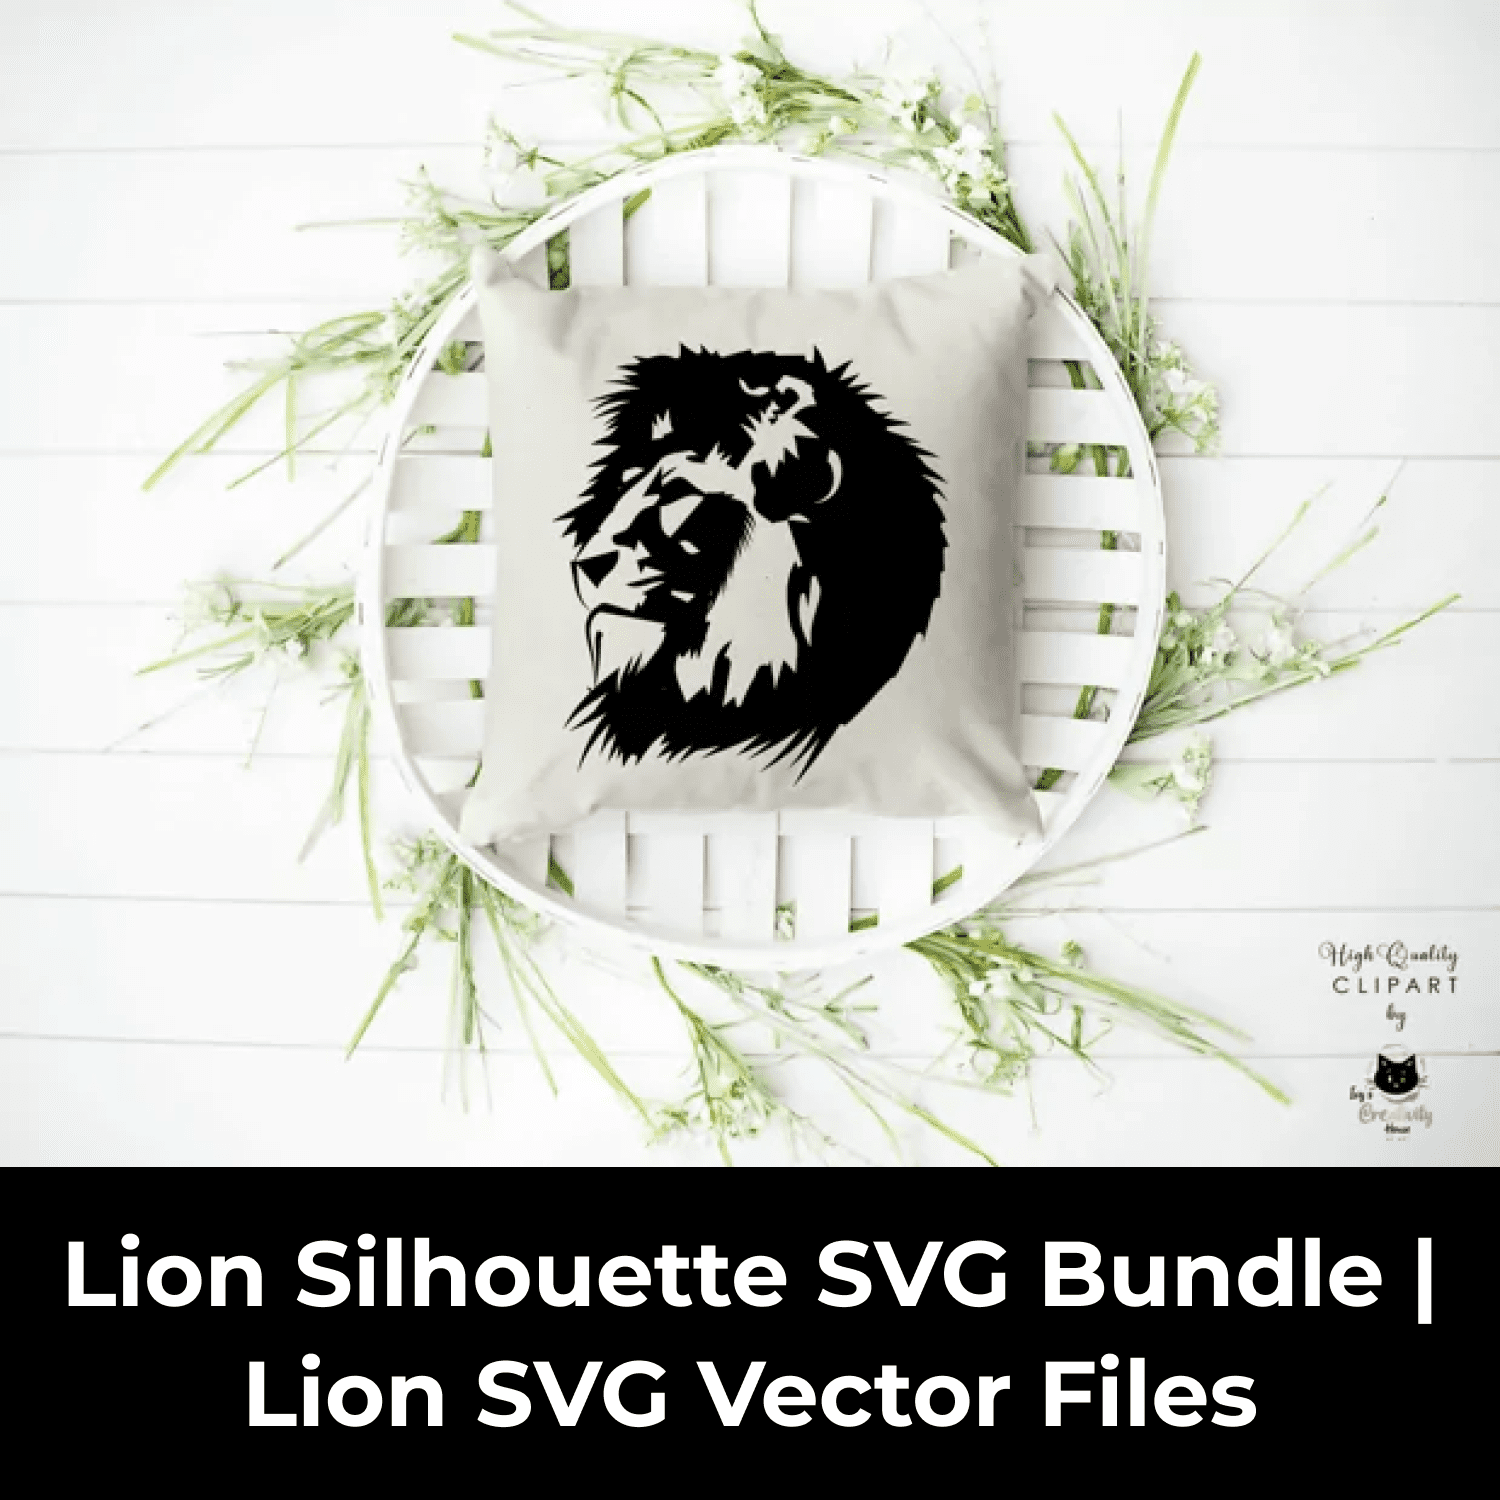 Lion Silhouette SVG Bundle | Lion SVG Vector Files cover image.